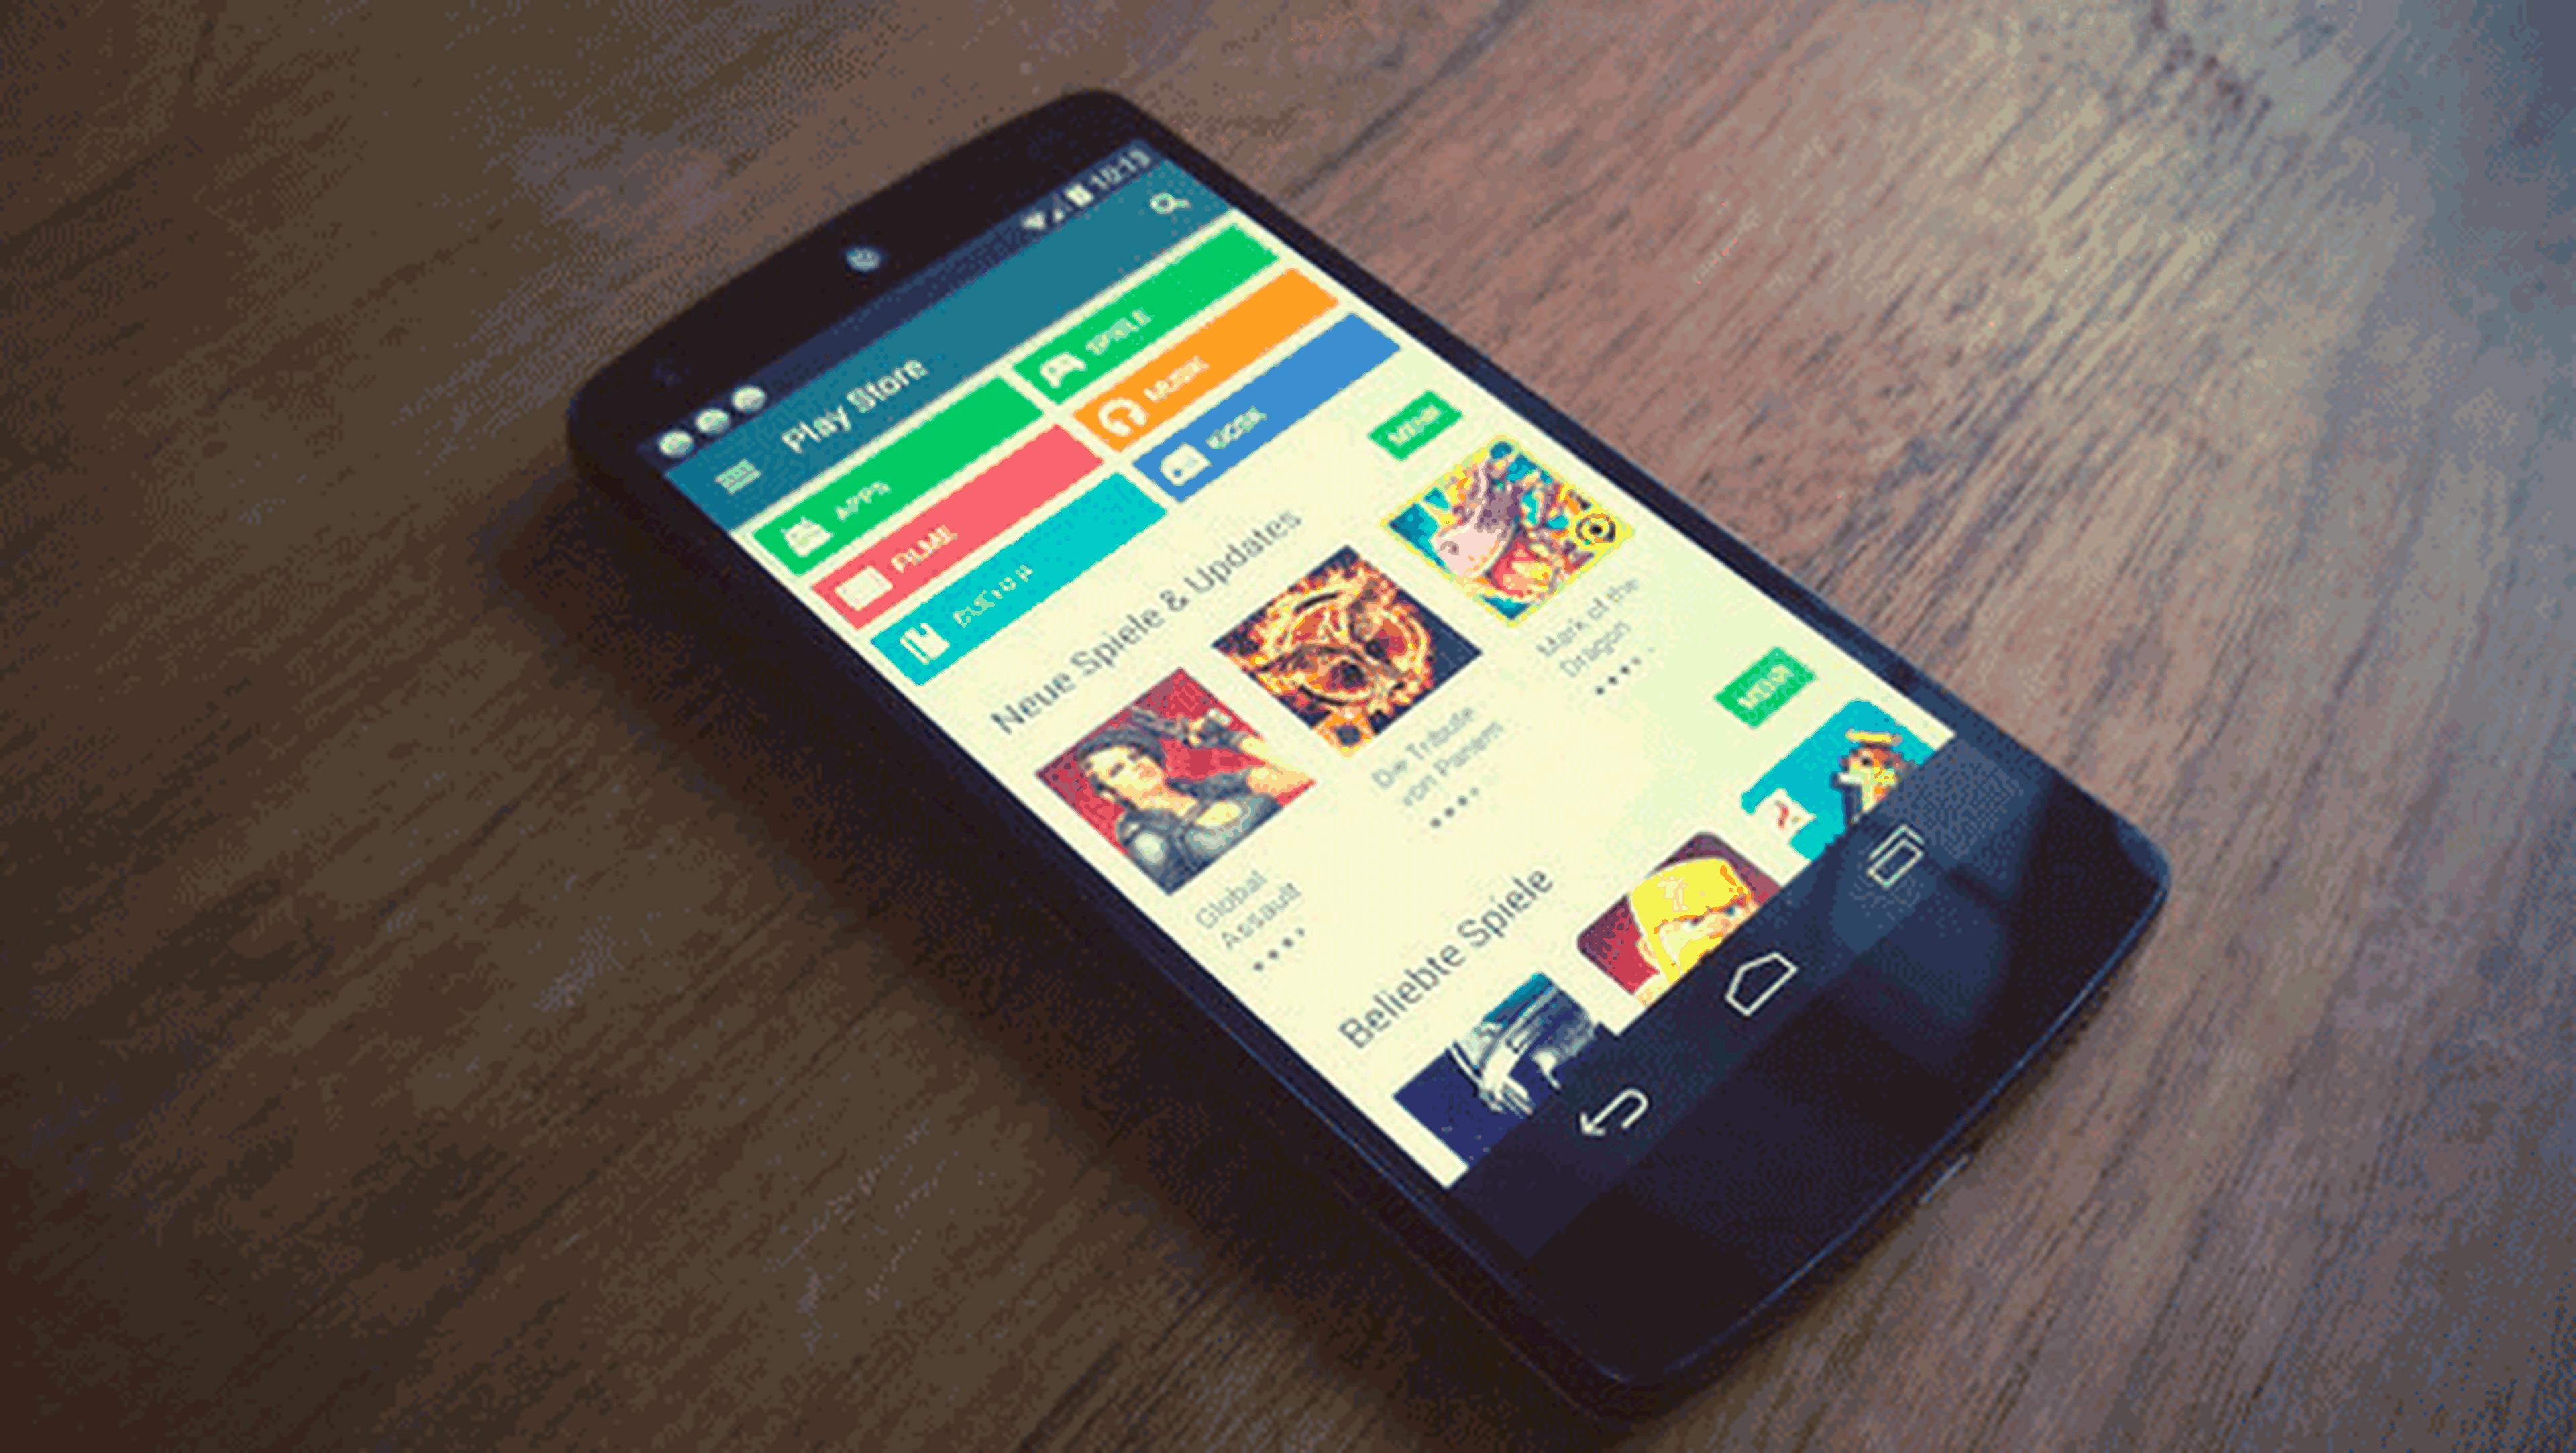 Descubierto un nuevo troyano en la Google Play que envía SMS Premium